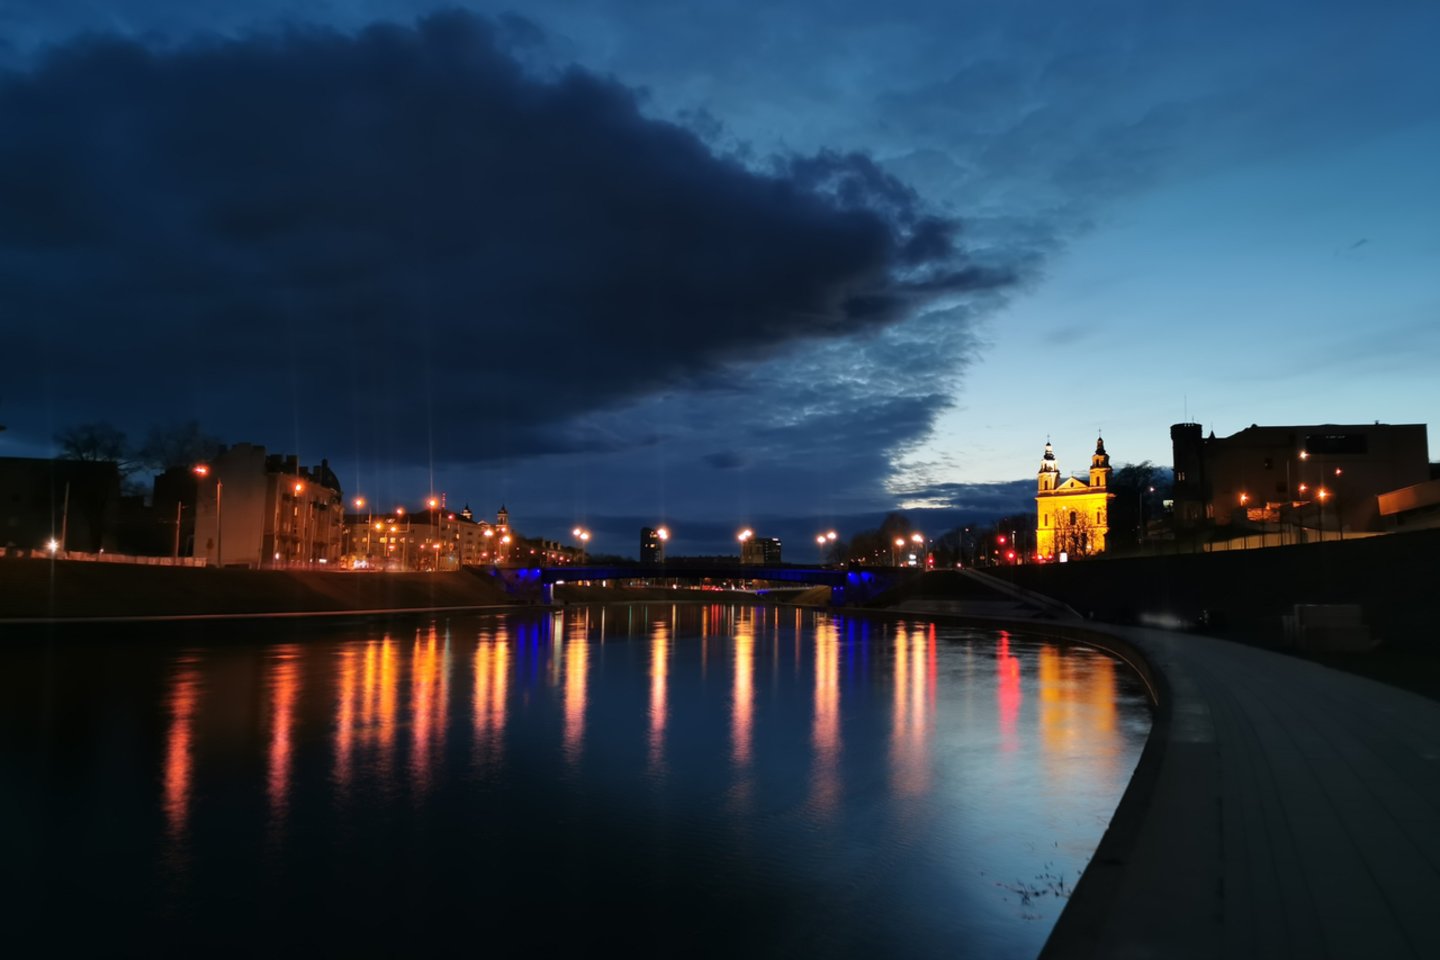  Mėlynai sužibę Lietuvos tiltai ir pastatai – minima pasaulinė autizmo supratimo diena.<br> T.Bauro nuotr.